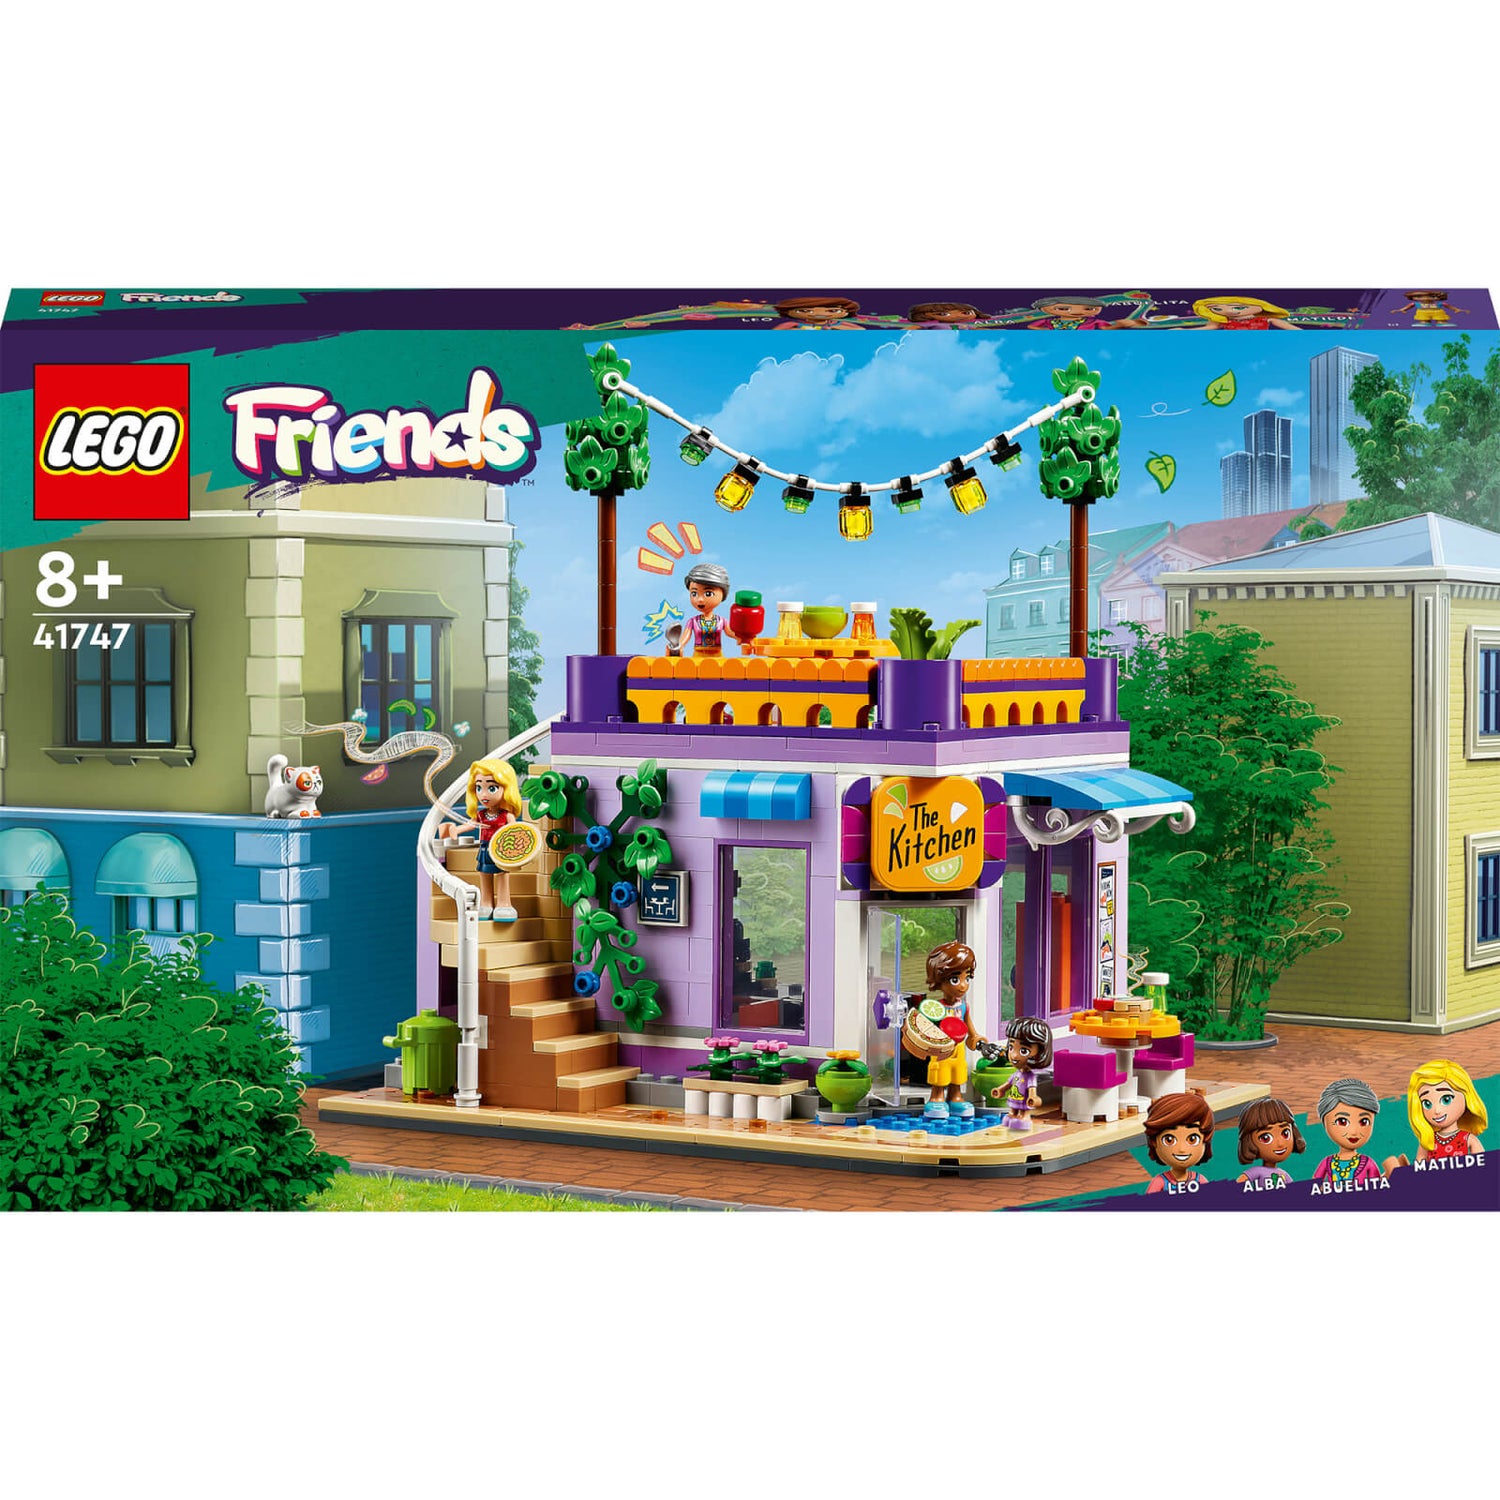 tilstrækkelig Pudsigt Manners LEGO Friends: Heartlake City: Community Kitchen Playset (41747) Toys -  Zavvi UK